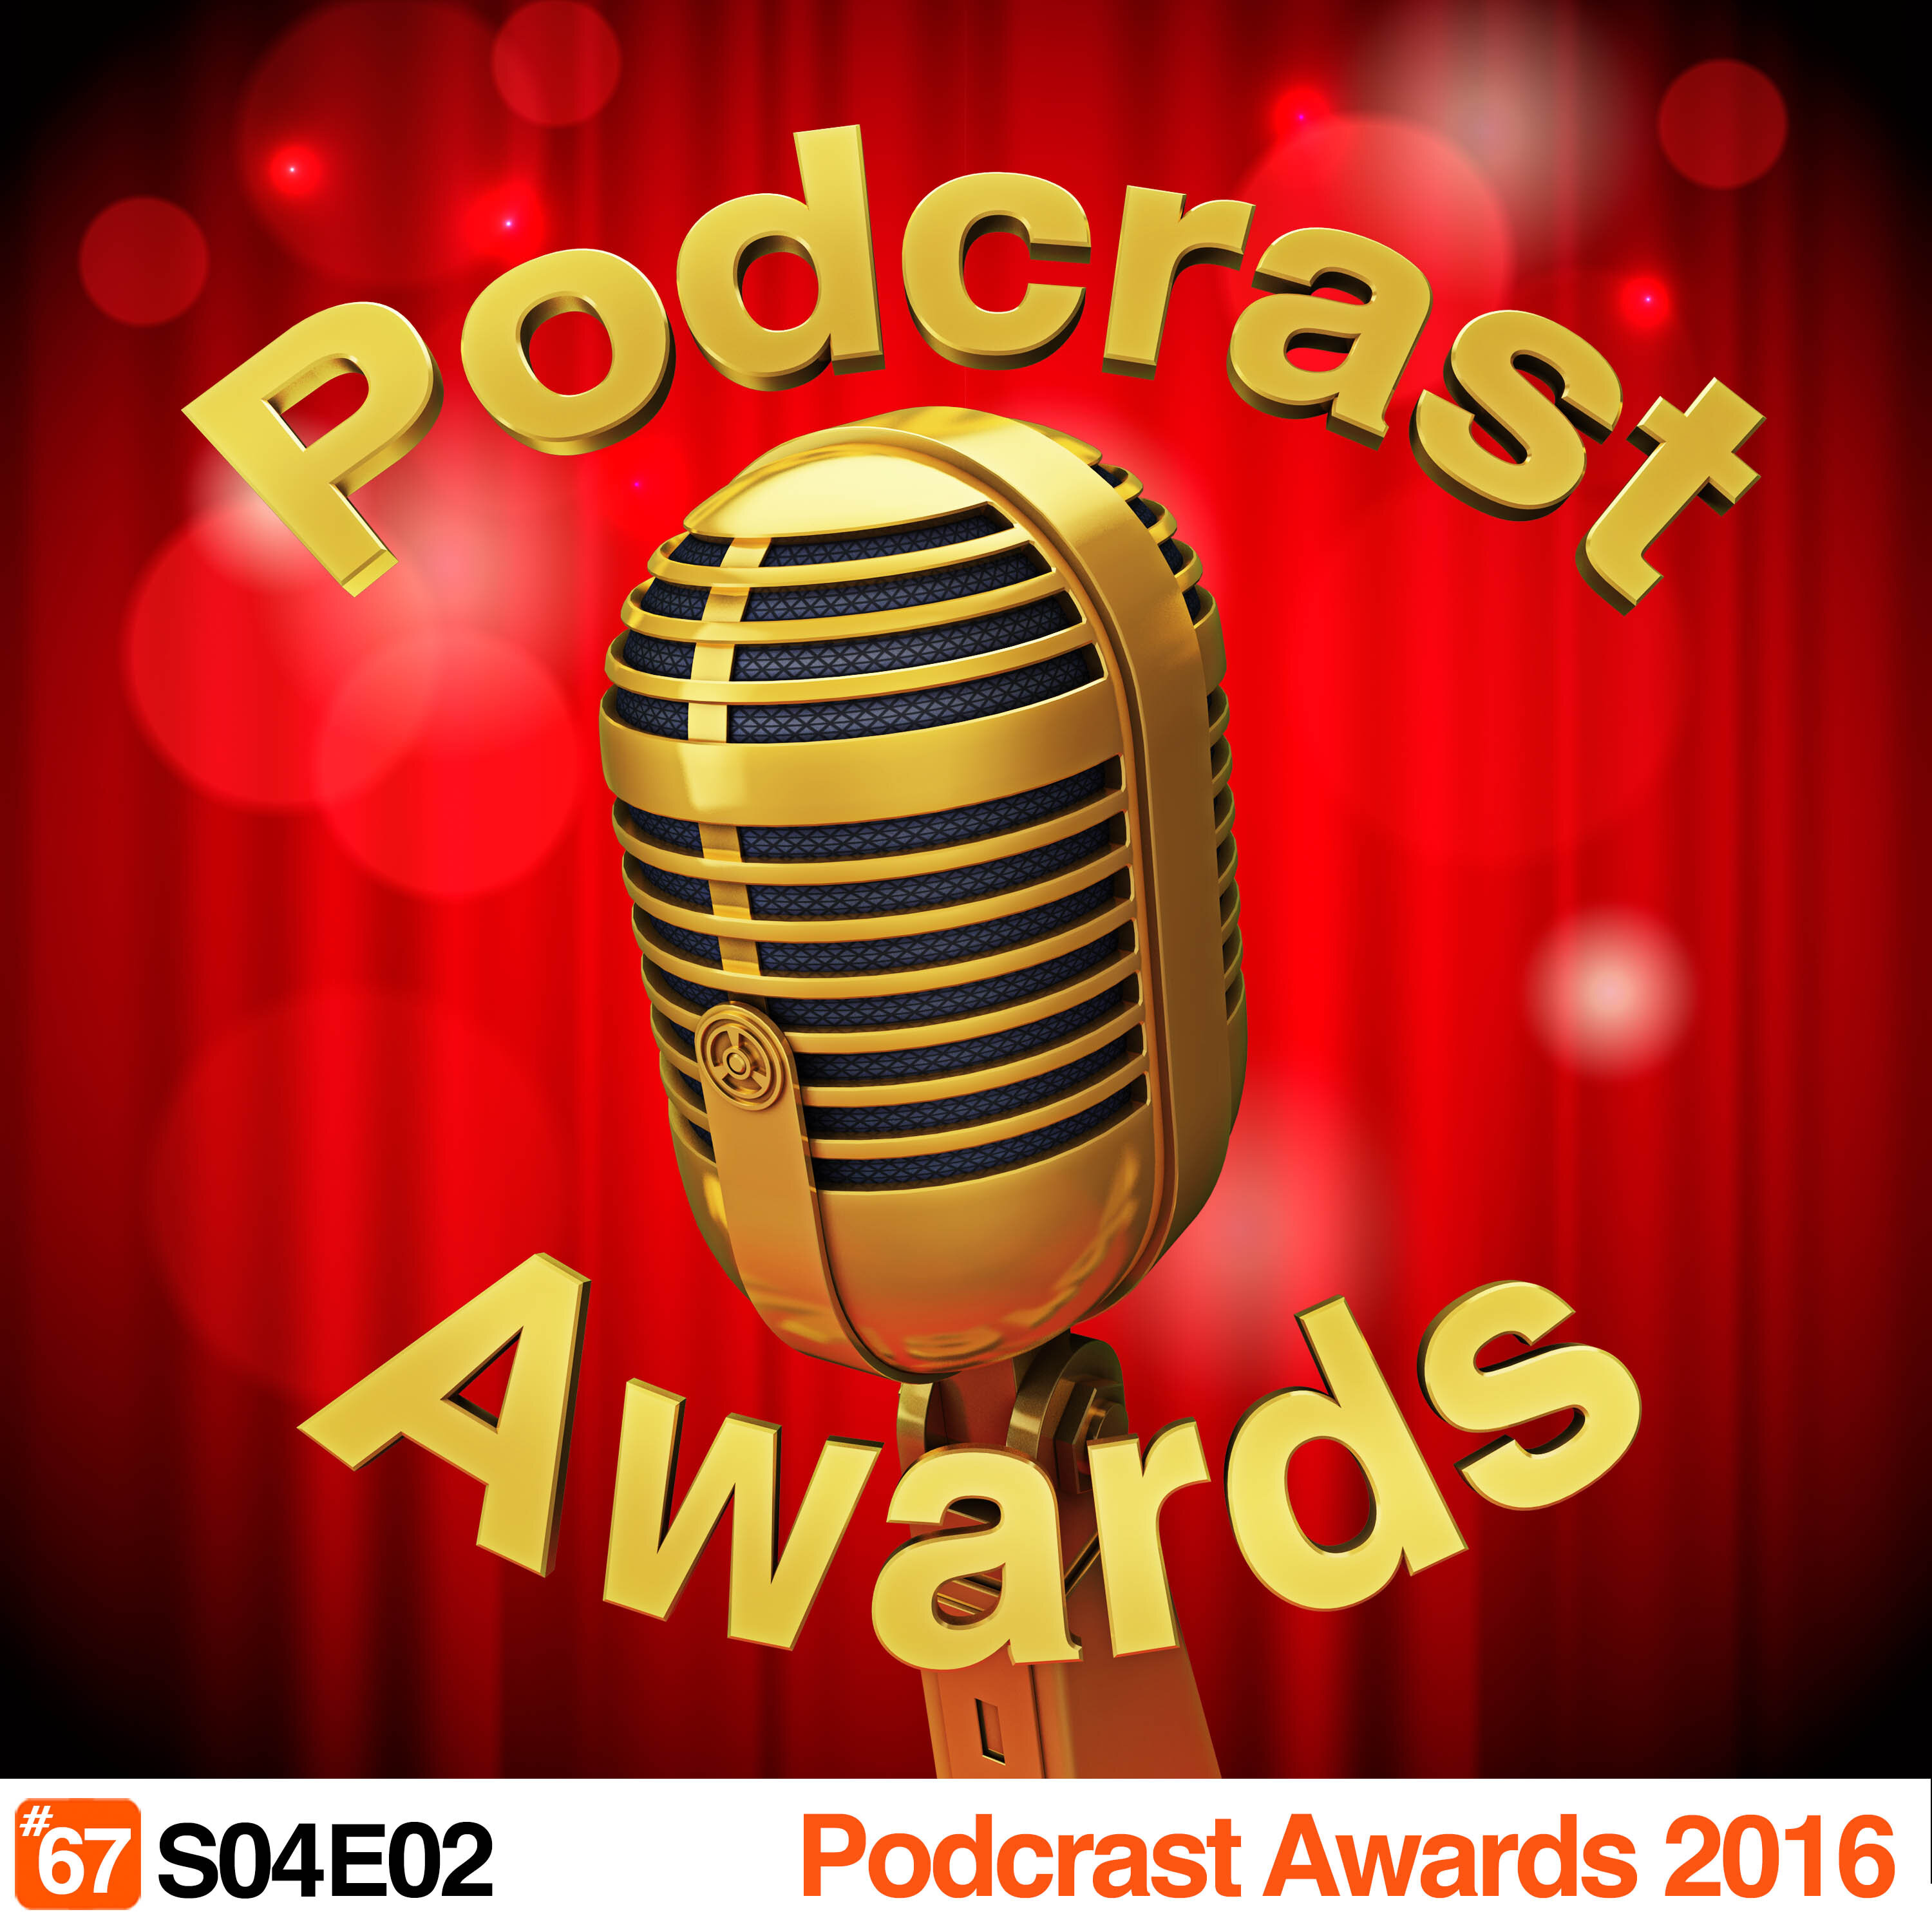 Podcrastinadores.S04E02 – Podcrast Awards 2016